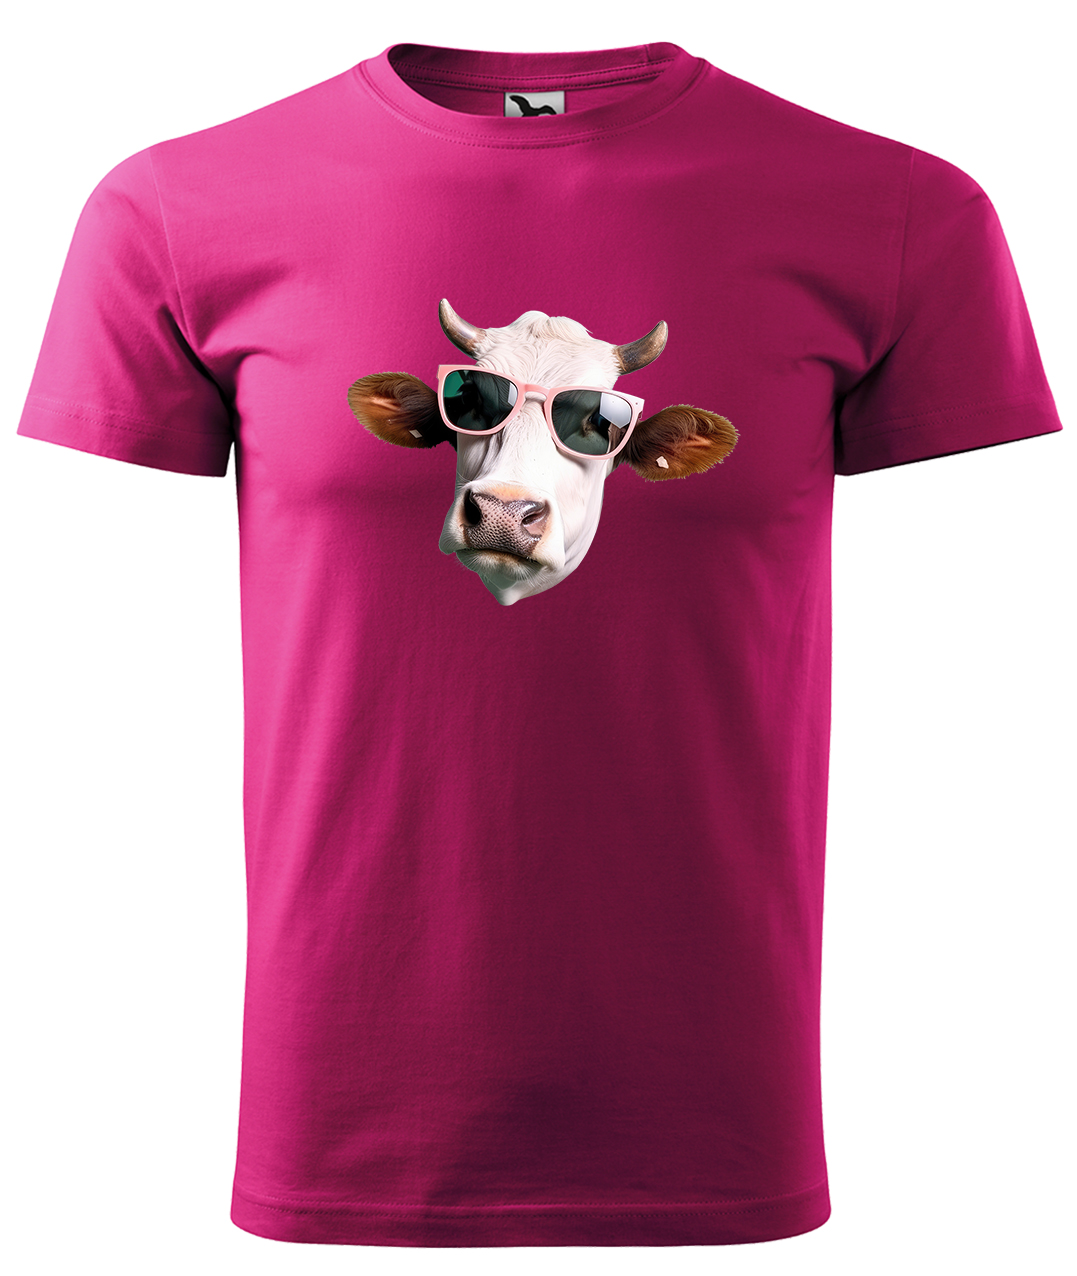 Dětské tričko s krávou - Kráva v brýlích Velikost: 8 let / 134 cm, Barva: Malinová (63), Délka rukávu: Krátký rukáv